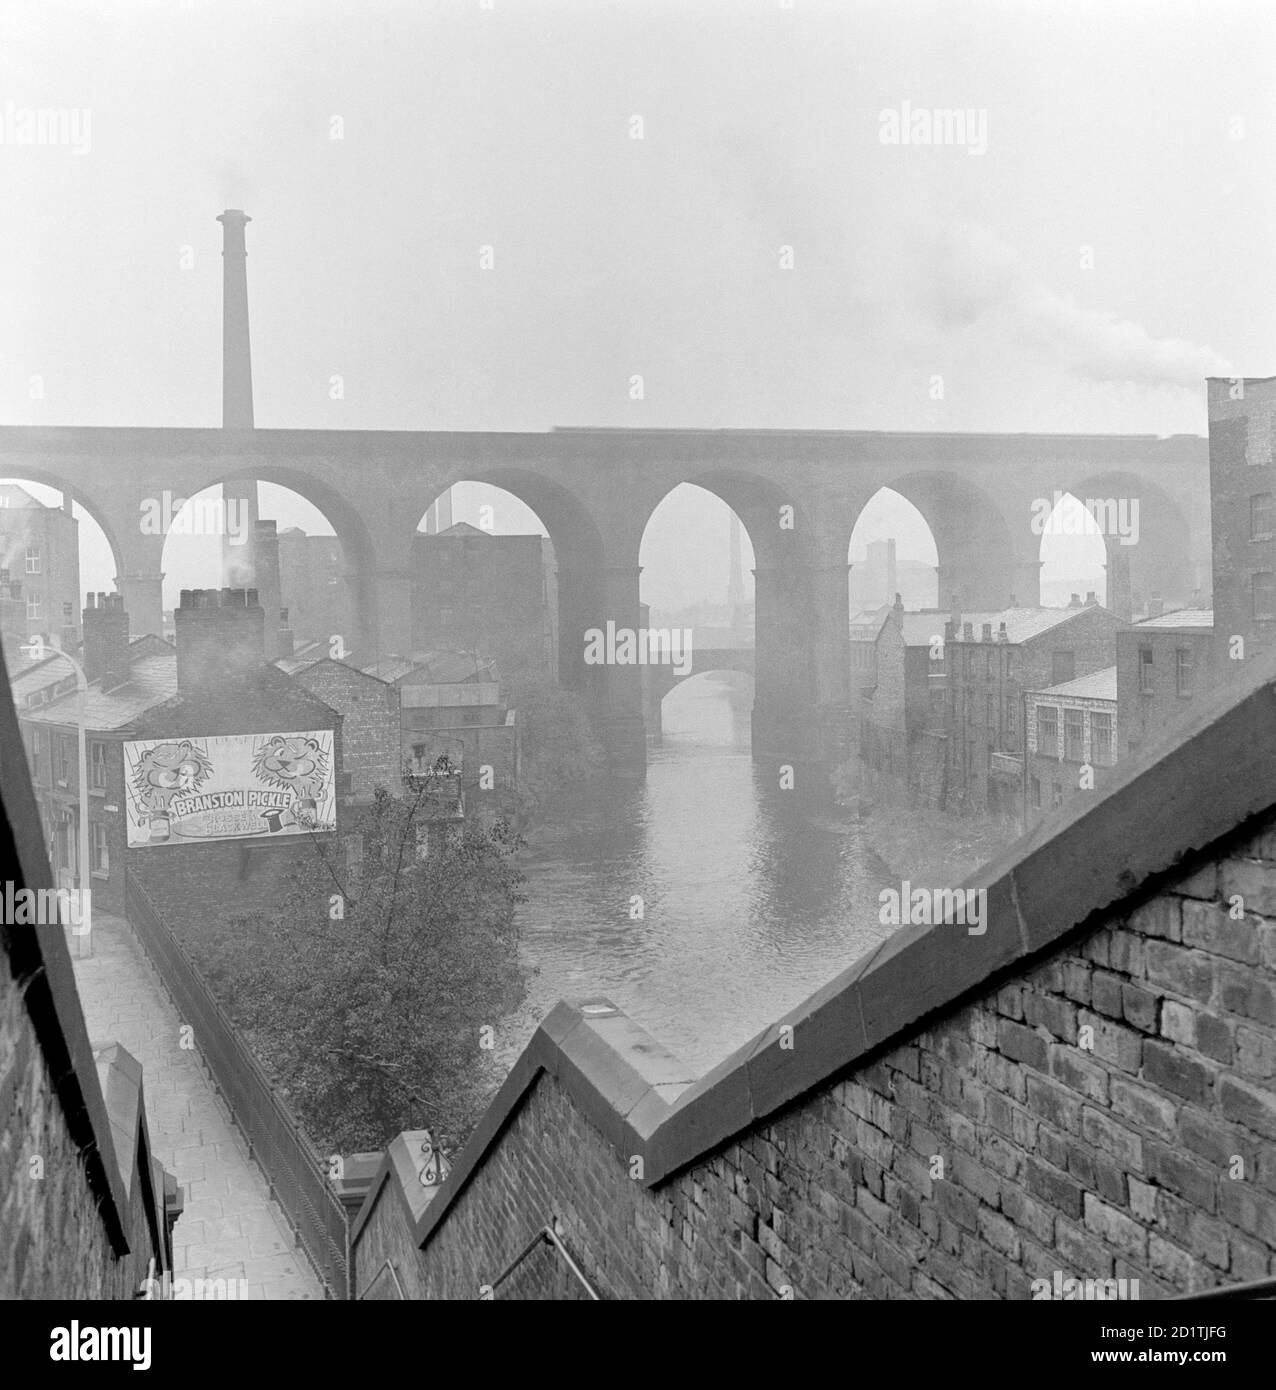 CHEMIN DE FER VIADUCT, Stockport, Grand Manchester. Ce paysage urbain évocateur montre le viaduc ferroviaire à Stockport, en regardant le long de la rivière. Photographié par Eric de Mare en 1954. Banque D'Images